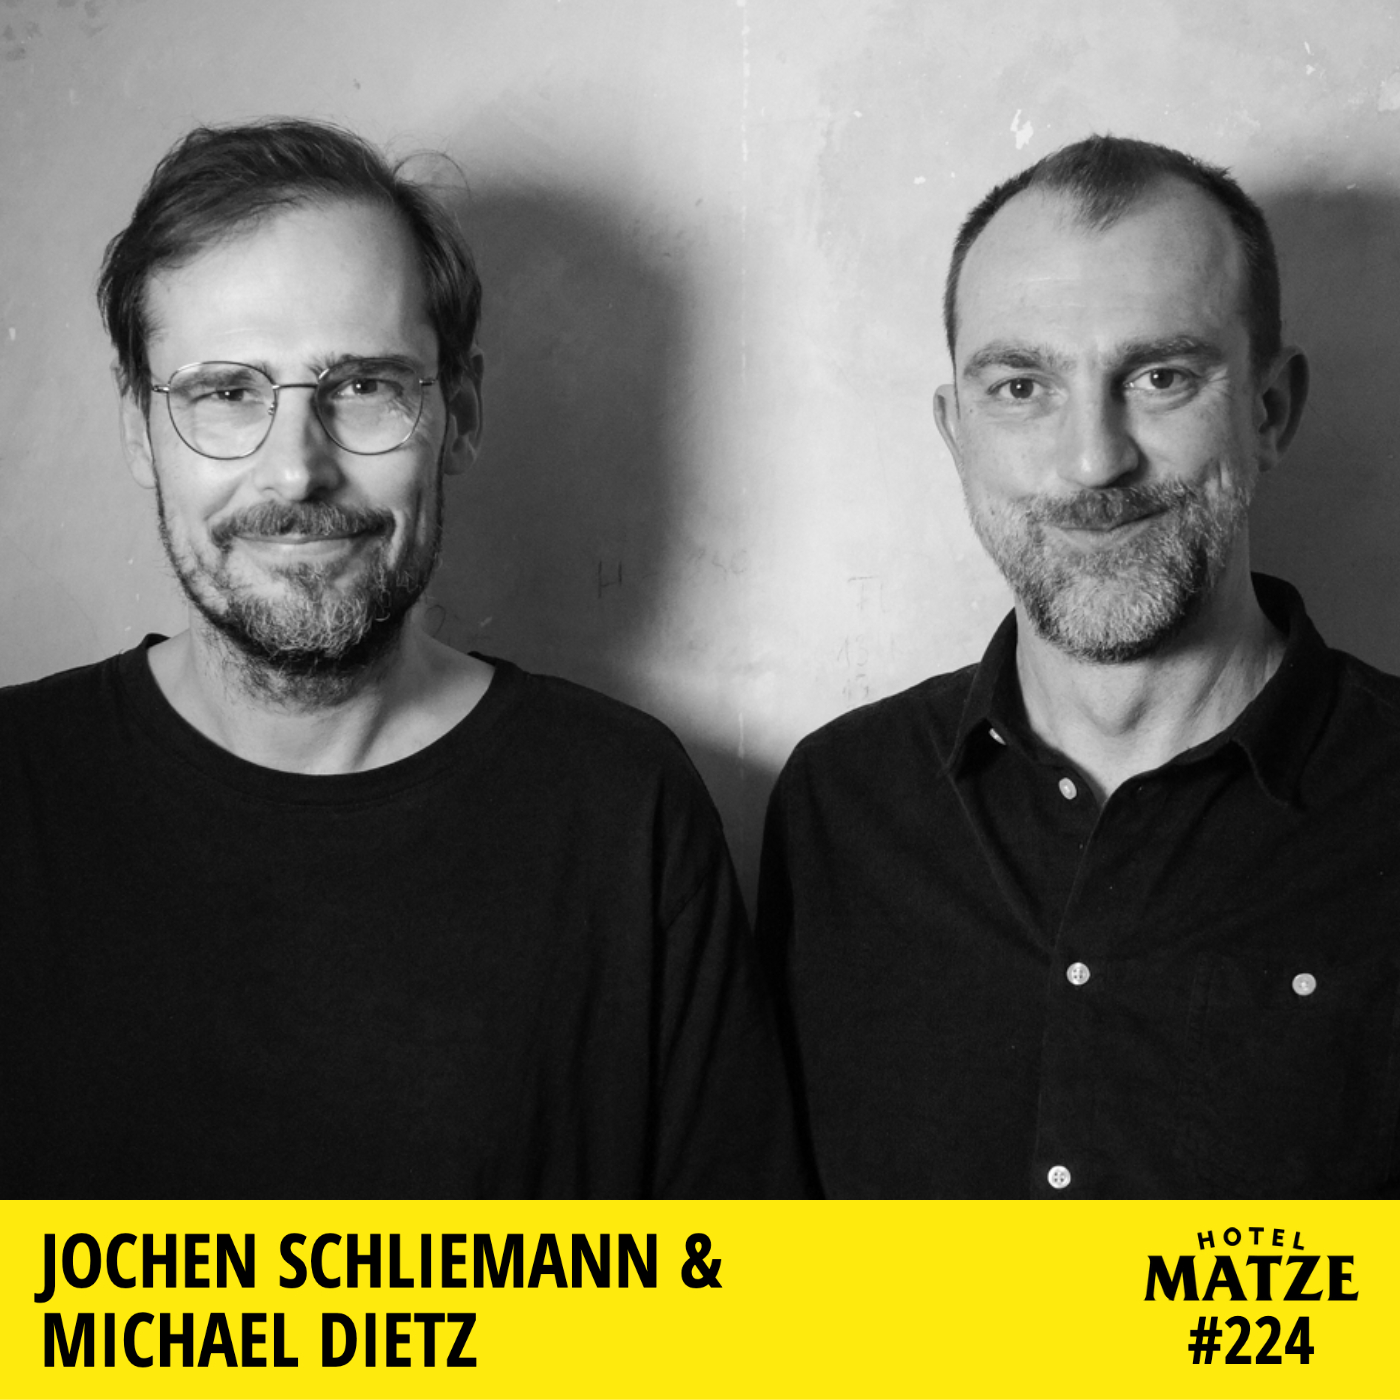 Jochen Schliemann und Michael Dietz (Reisen, Reisen, Podcast) – Wie wollt ihr die Welt entdecken?